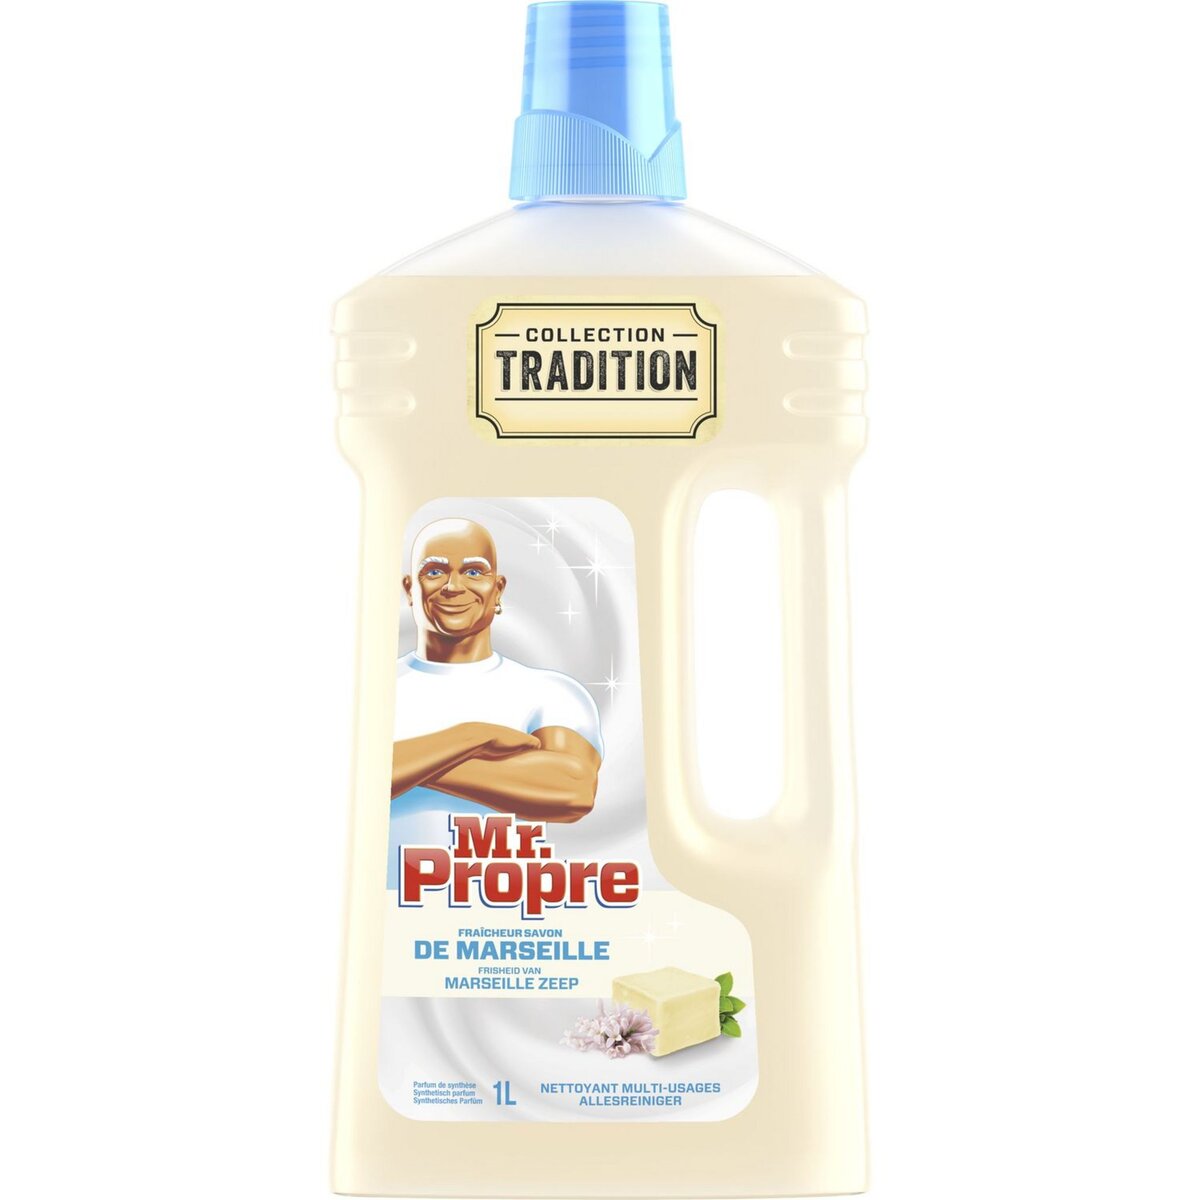 MR.PROPRE Tradition nettoyant ménager multi-usages au savon de Marseille 1l